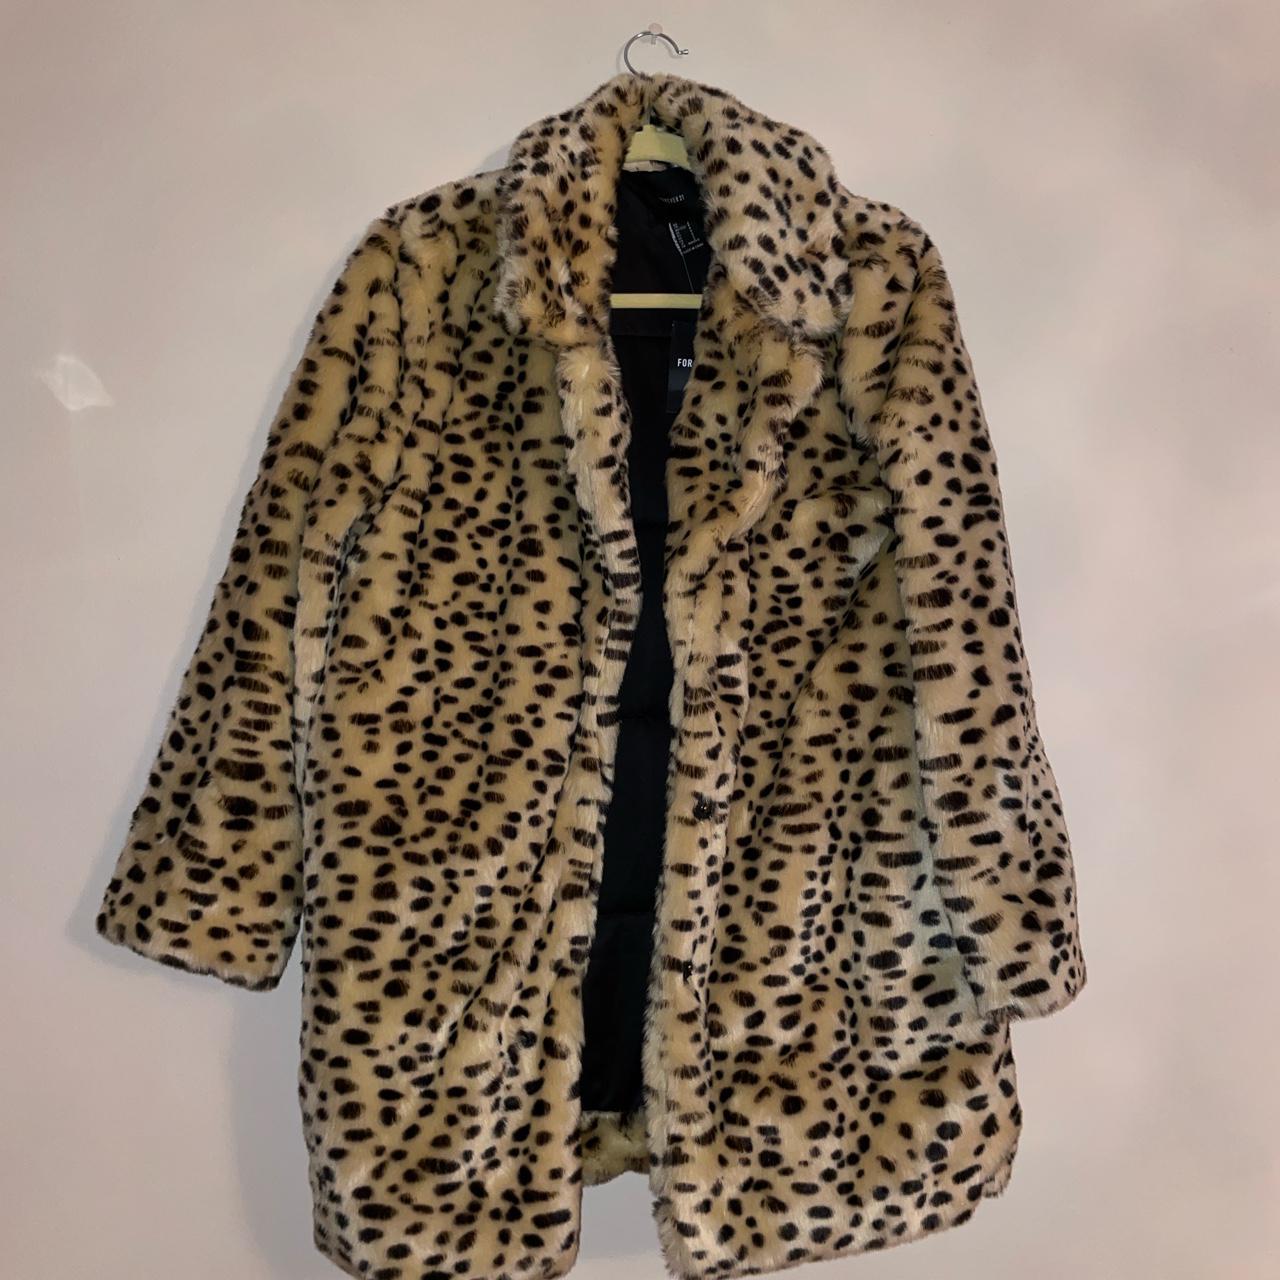 Faux fur cheetah print outerwear coat #cheetah... - Depop